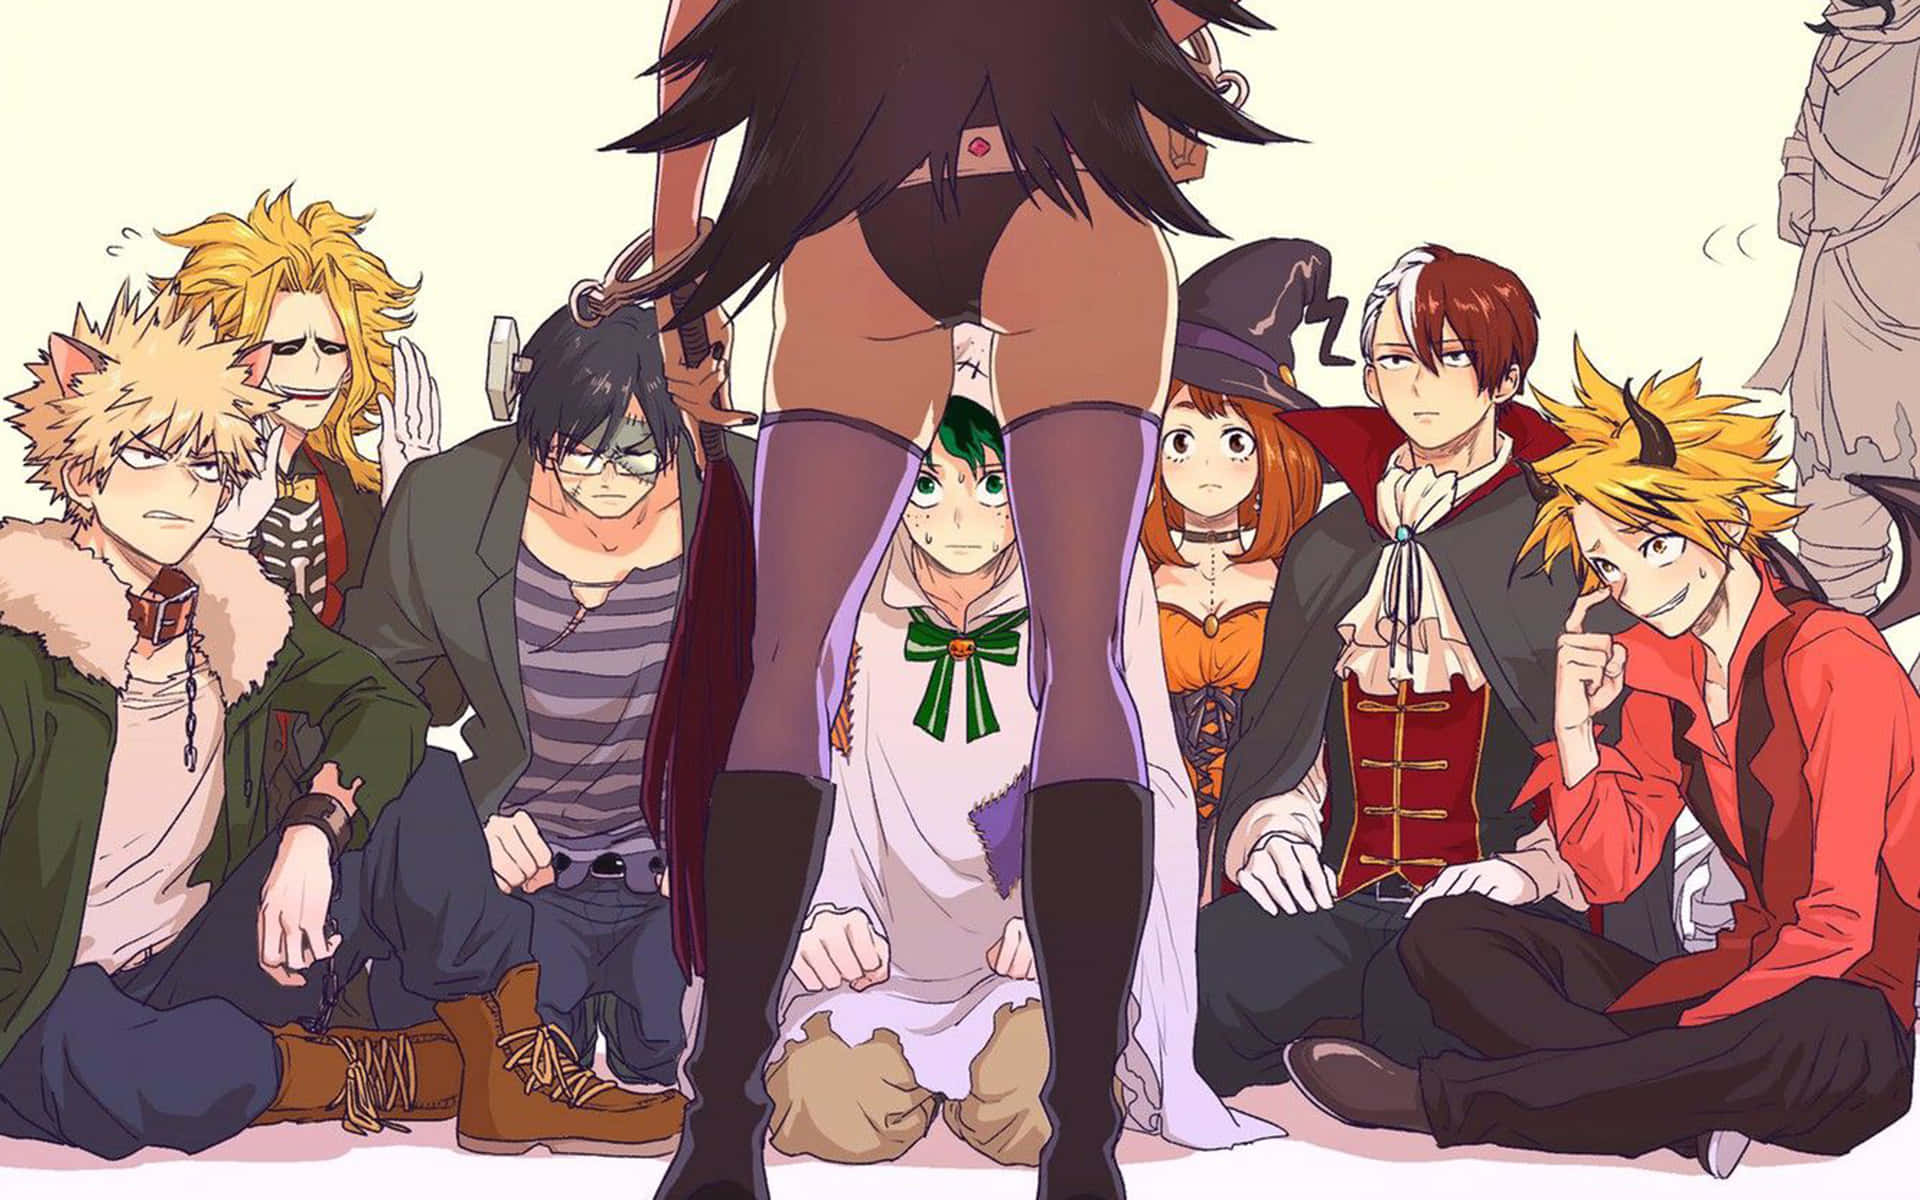 Engruppe Anime-karakterer Omringet Af En Gruppe Mennesker.